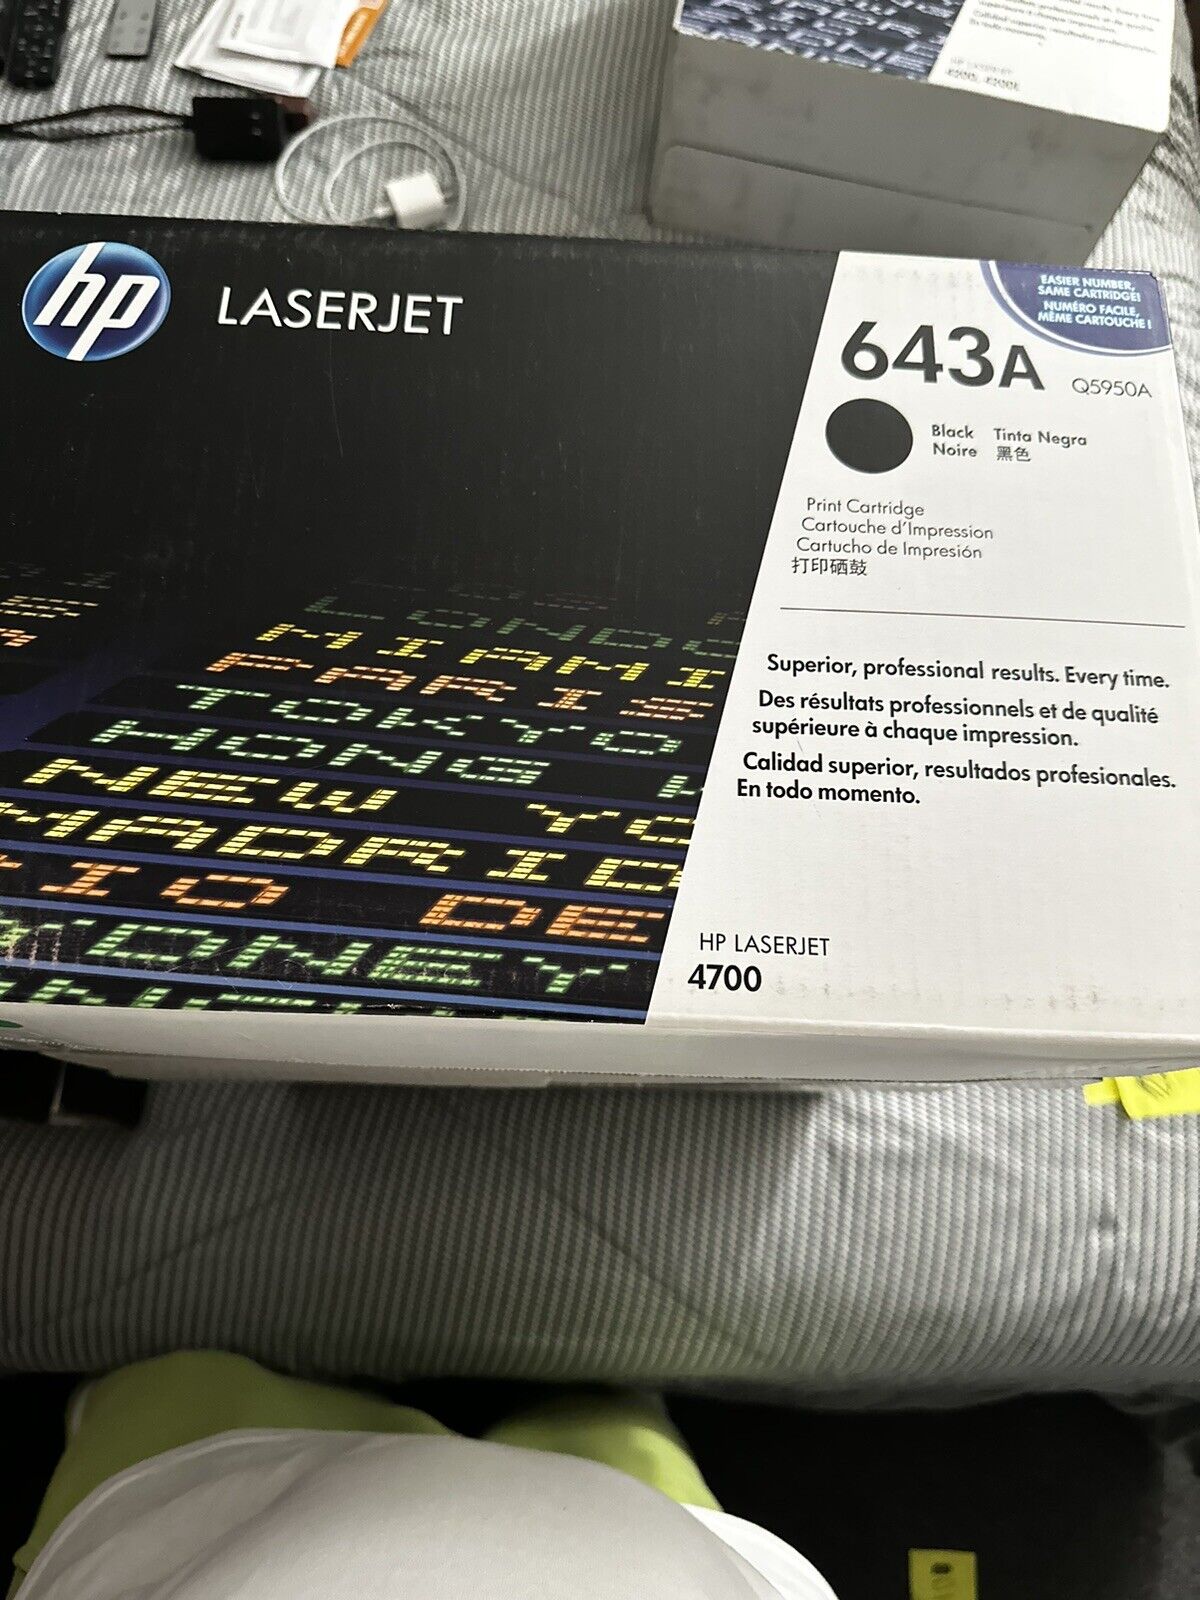 Genuine HP LaserJet Toner 643A Black Q5950A OEM, Sealed